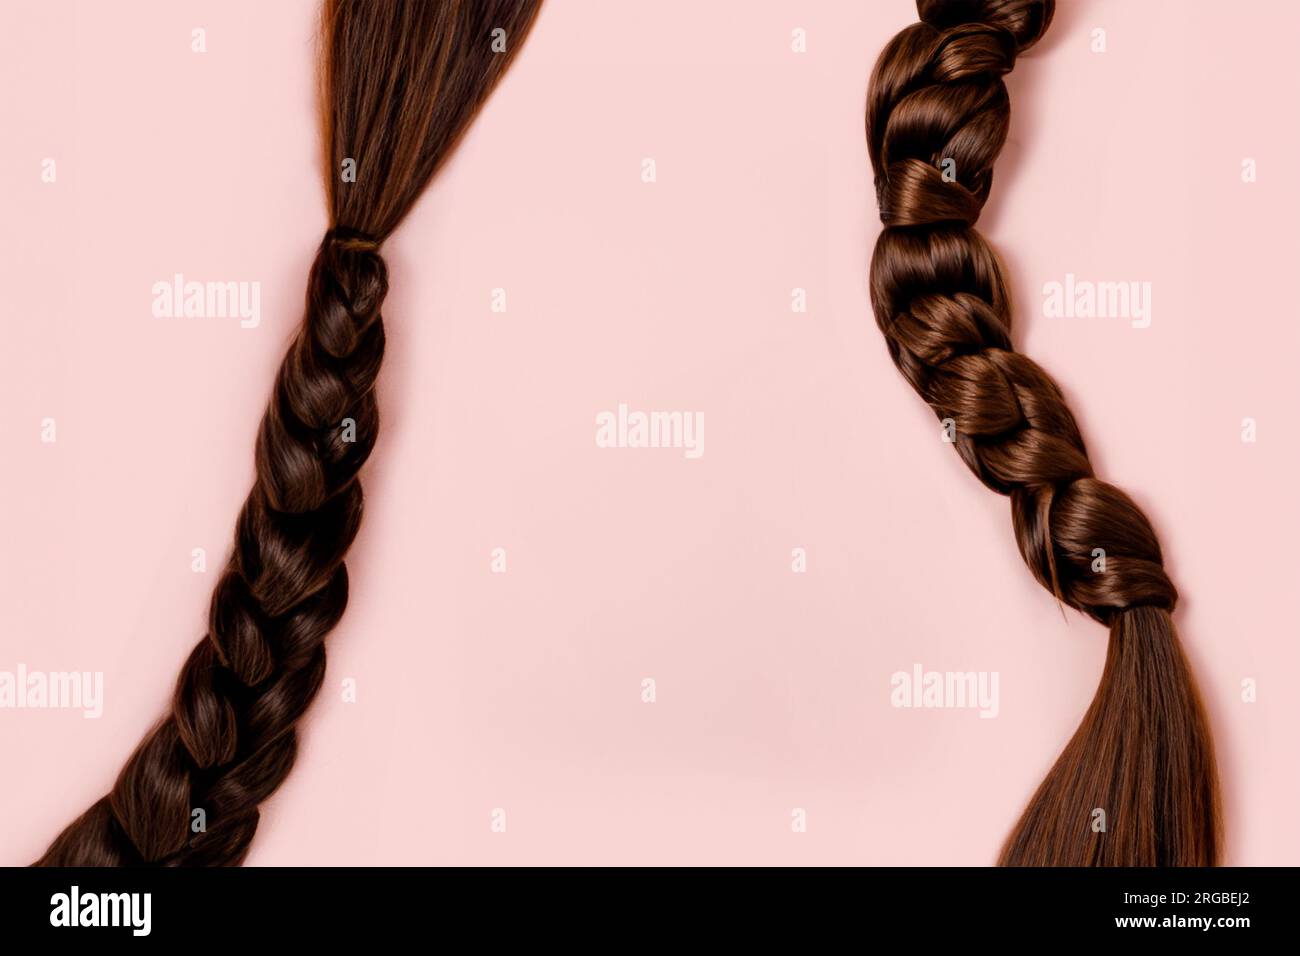 Hintergrund für Produktwerbung. Zwei rote kupferfarbene, lange weibliche Haargeflechte auf pinkfarbenem Hintergrund. Platz für kosmetische Mittel kopieren Stockfoto